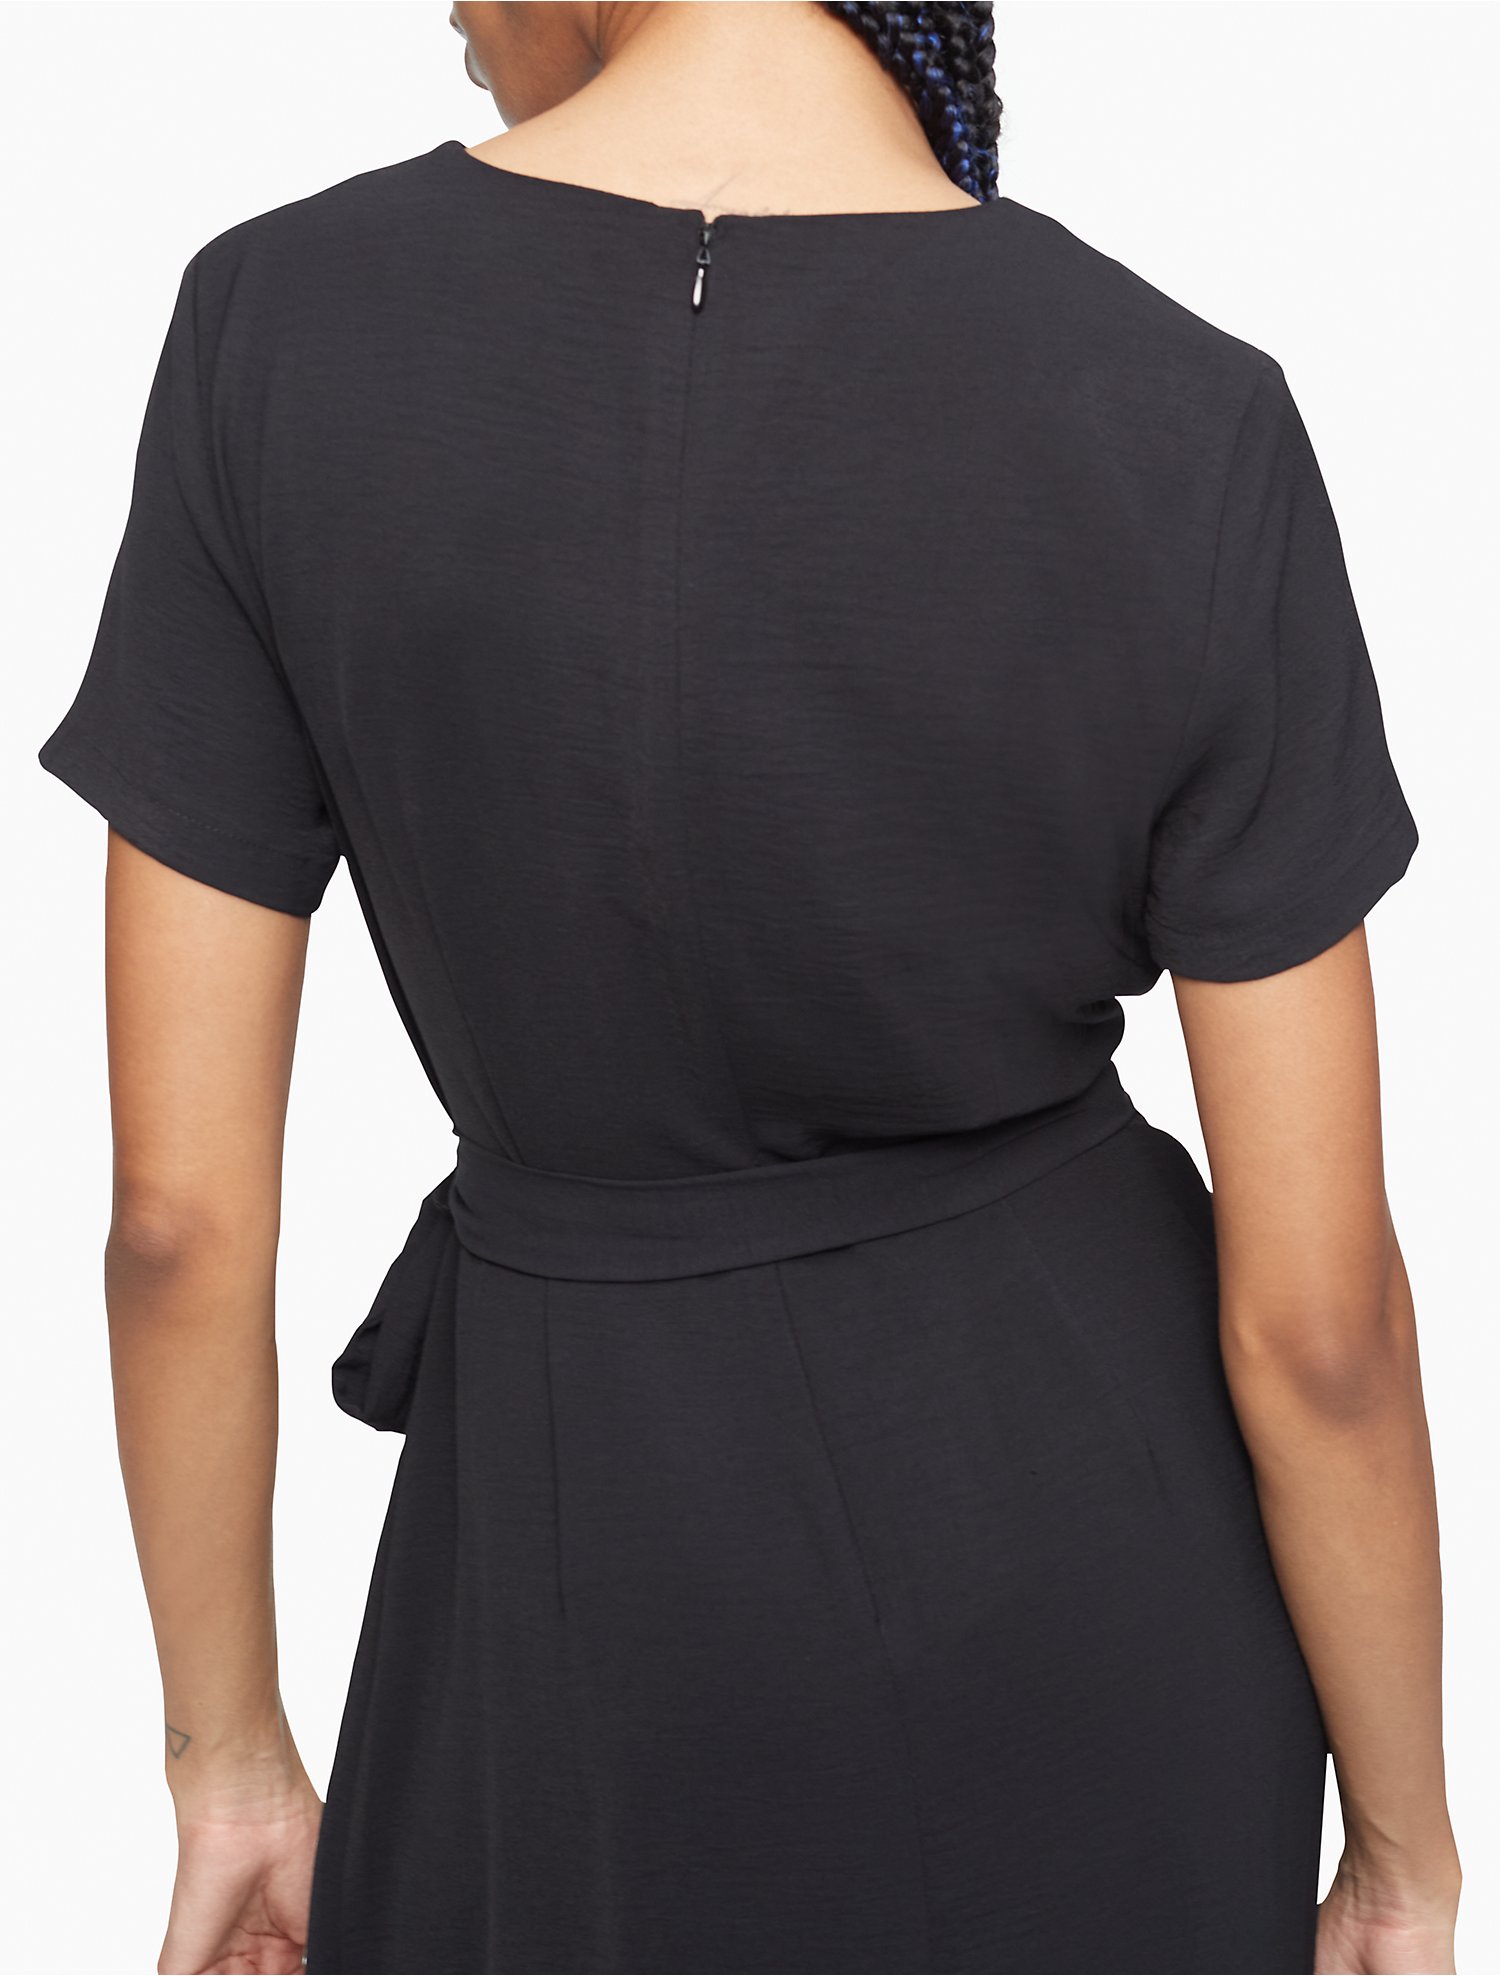 Asymmetric Midi Wrap Dress | Calvin Klein® USA